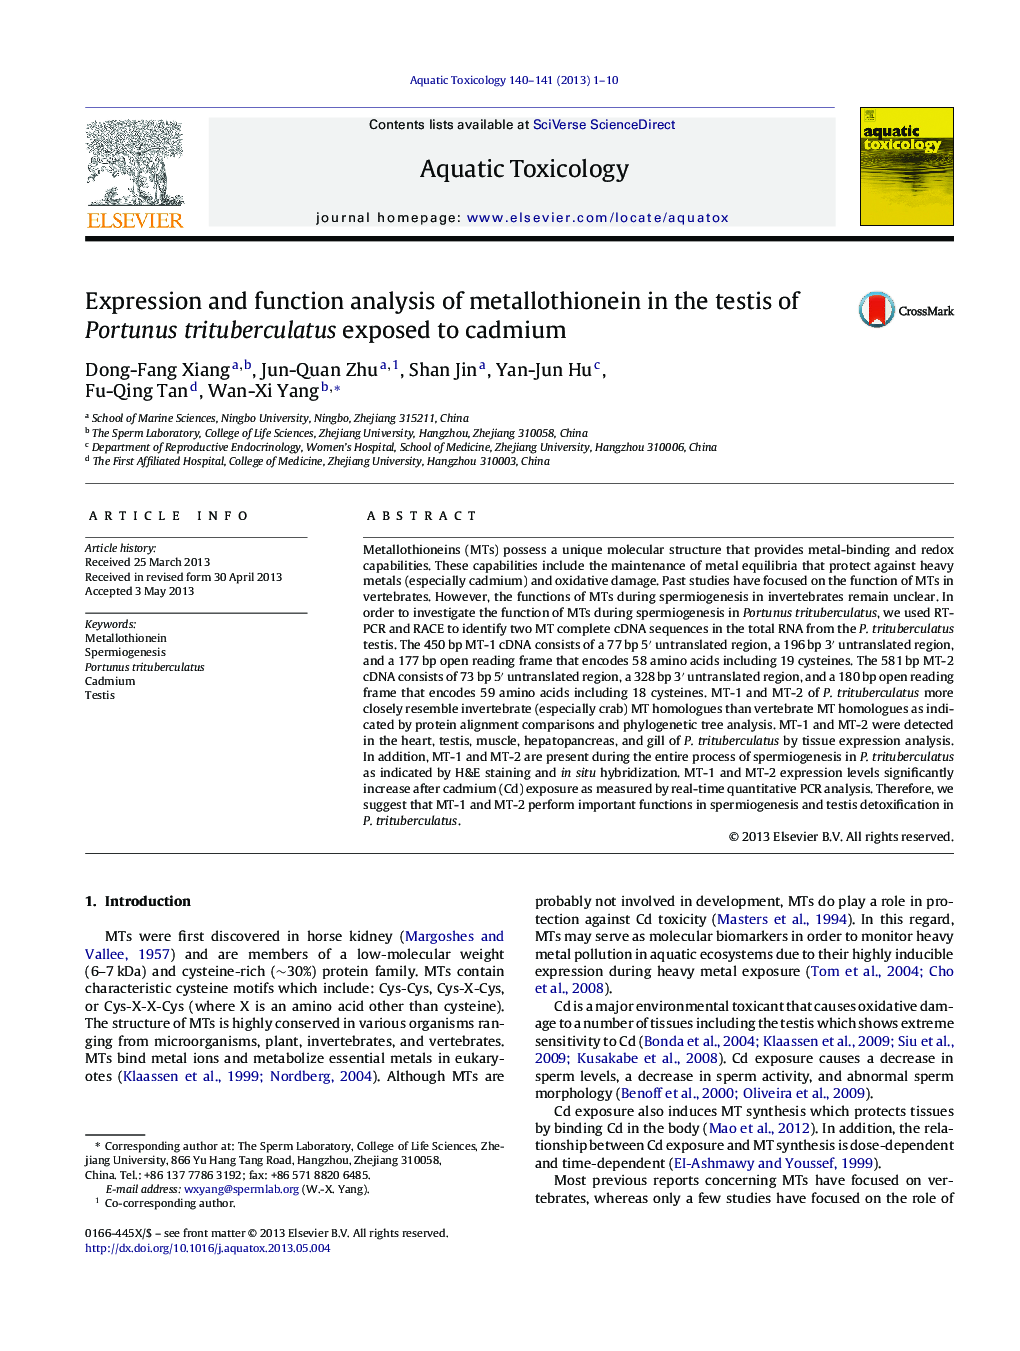 Expression and function analysis of metallothionein in the testis of Portunus trituberculatus exposed to cadmium